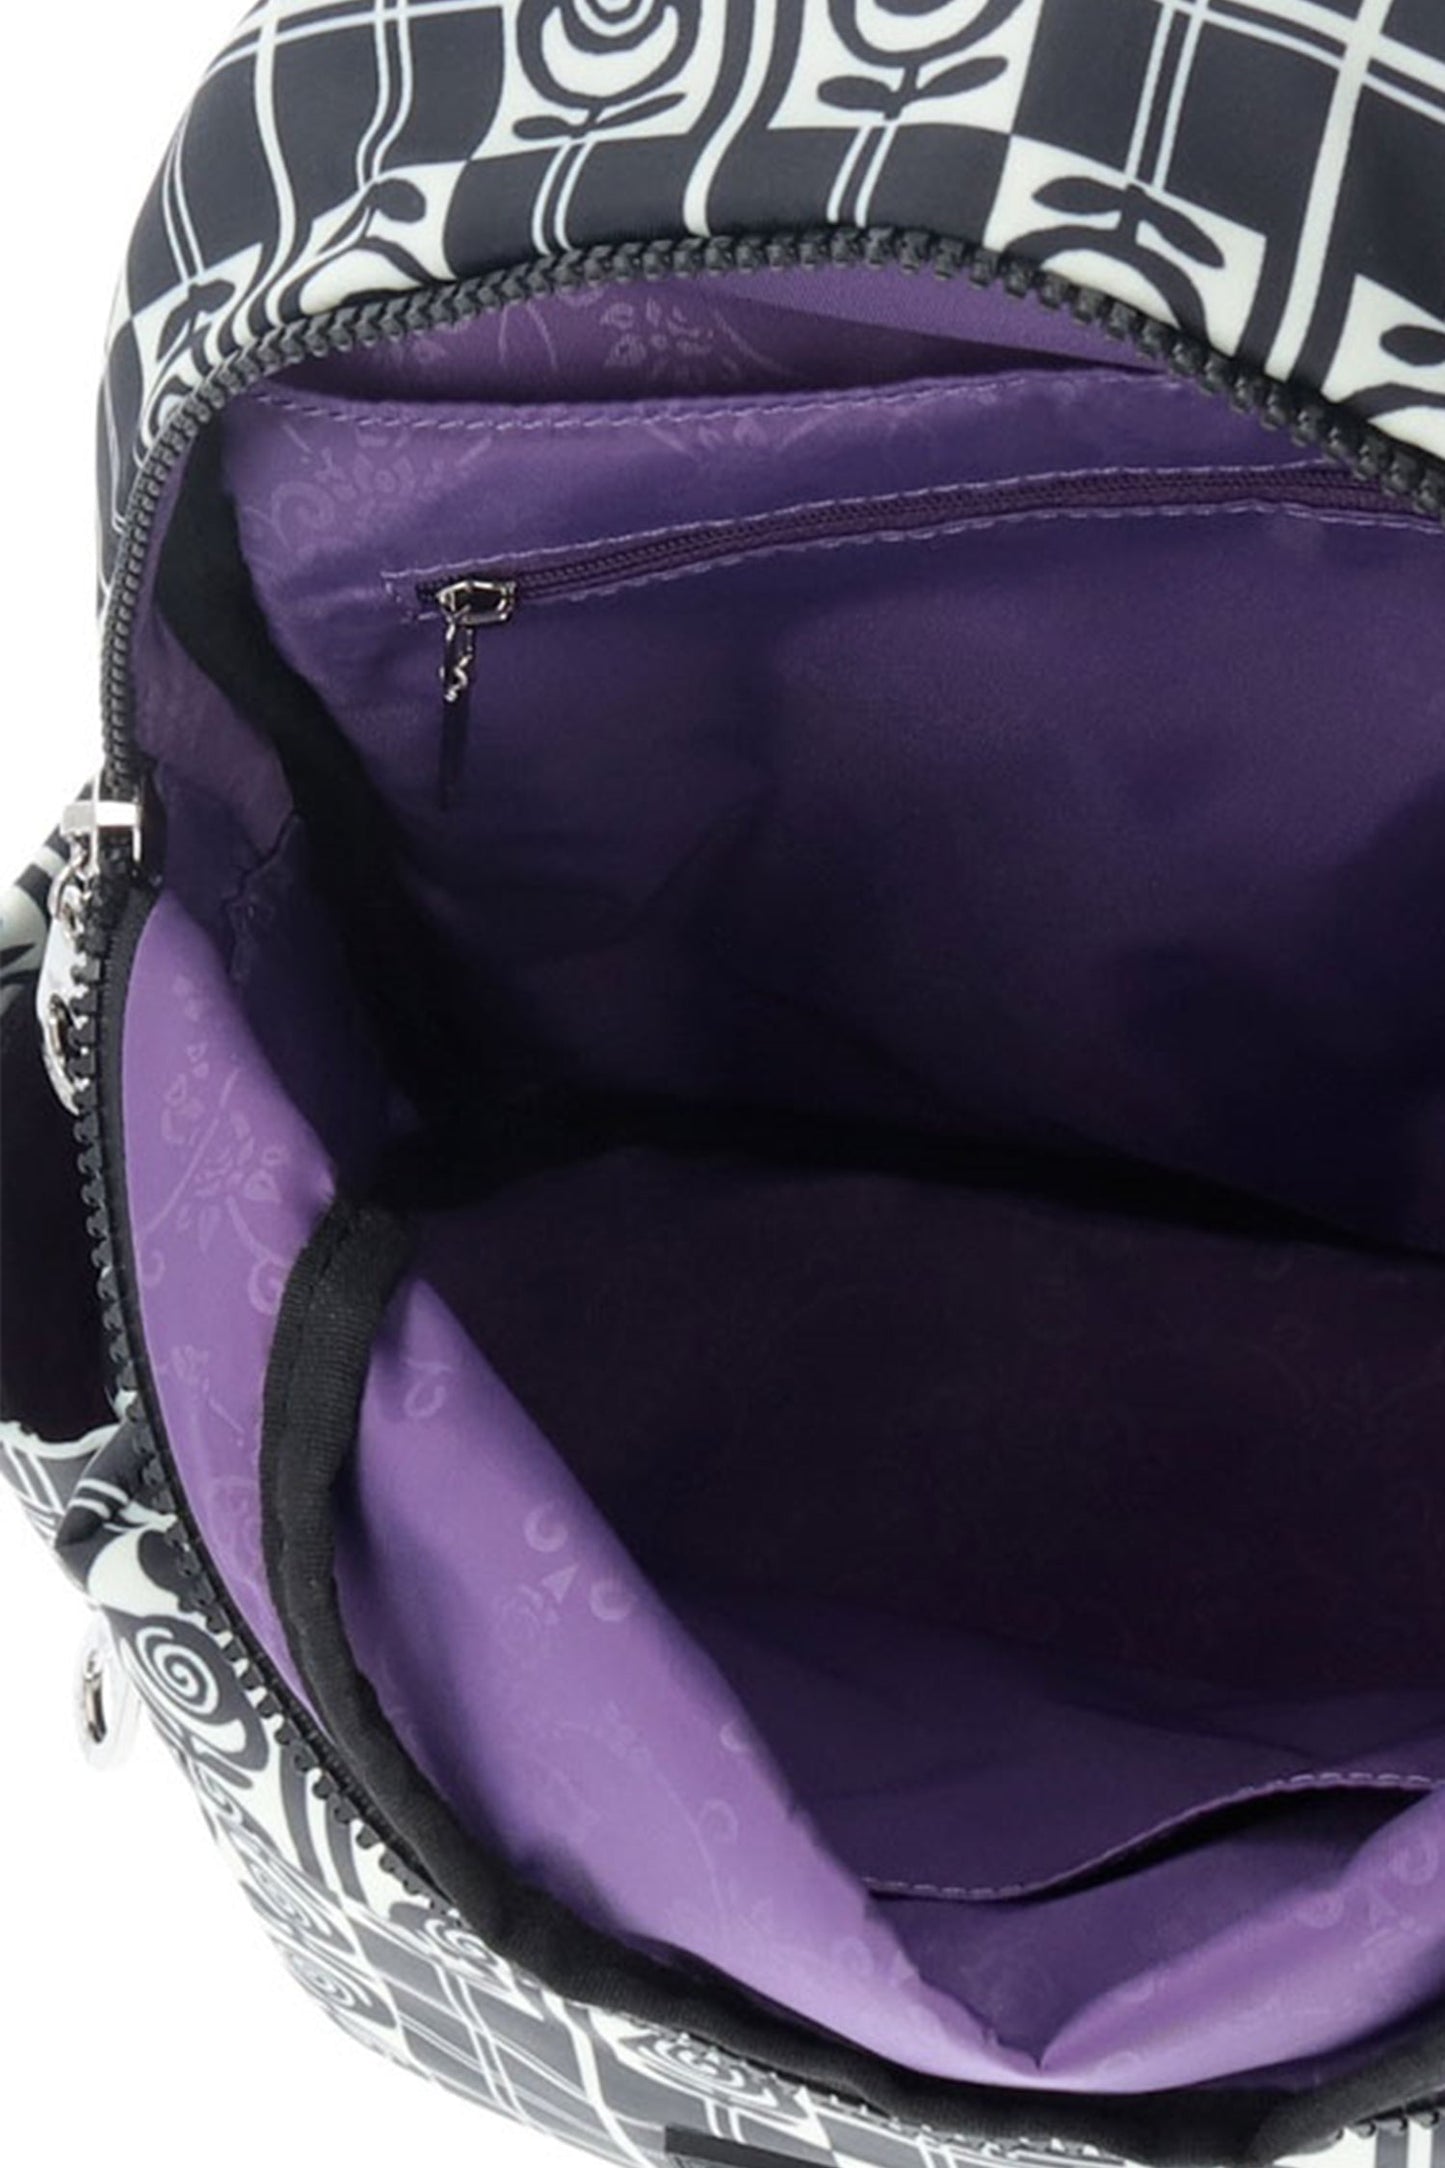 Rose Trellis Backpack, purple design inside, with zipper pocket, and flap pocket, plenty of space 